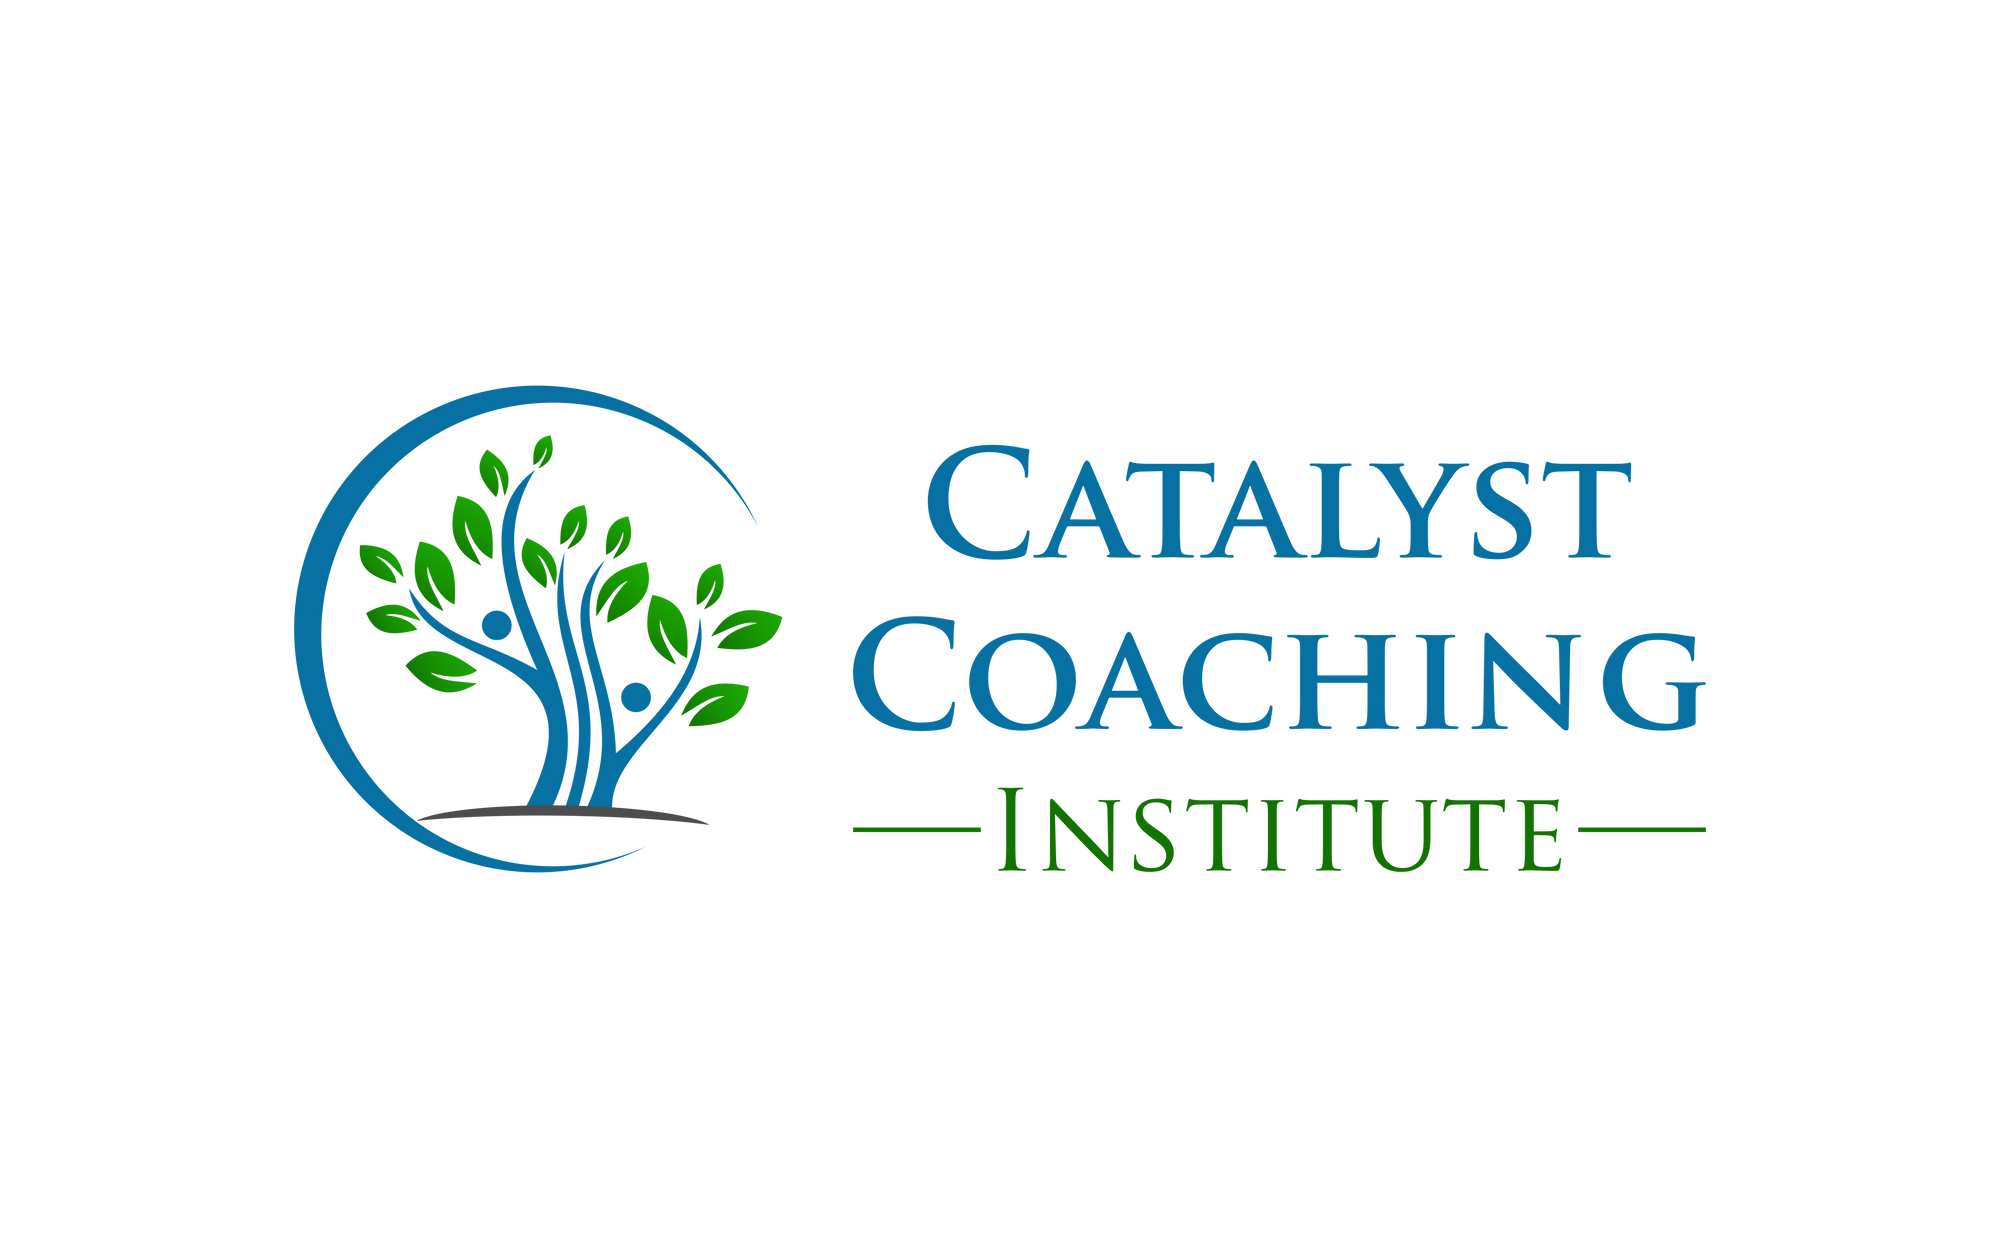 Catalyst Coaching Institute - Brad Cooper